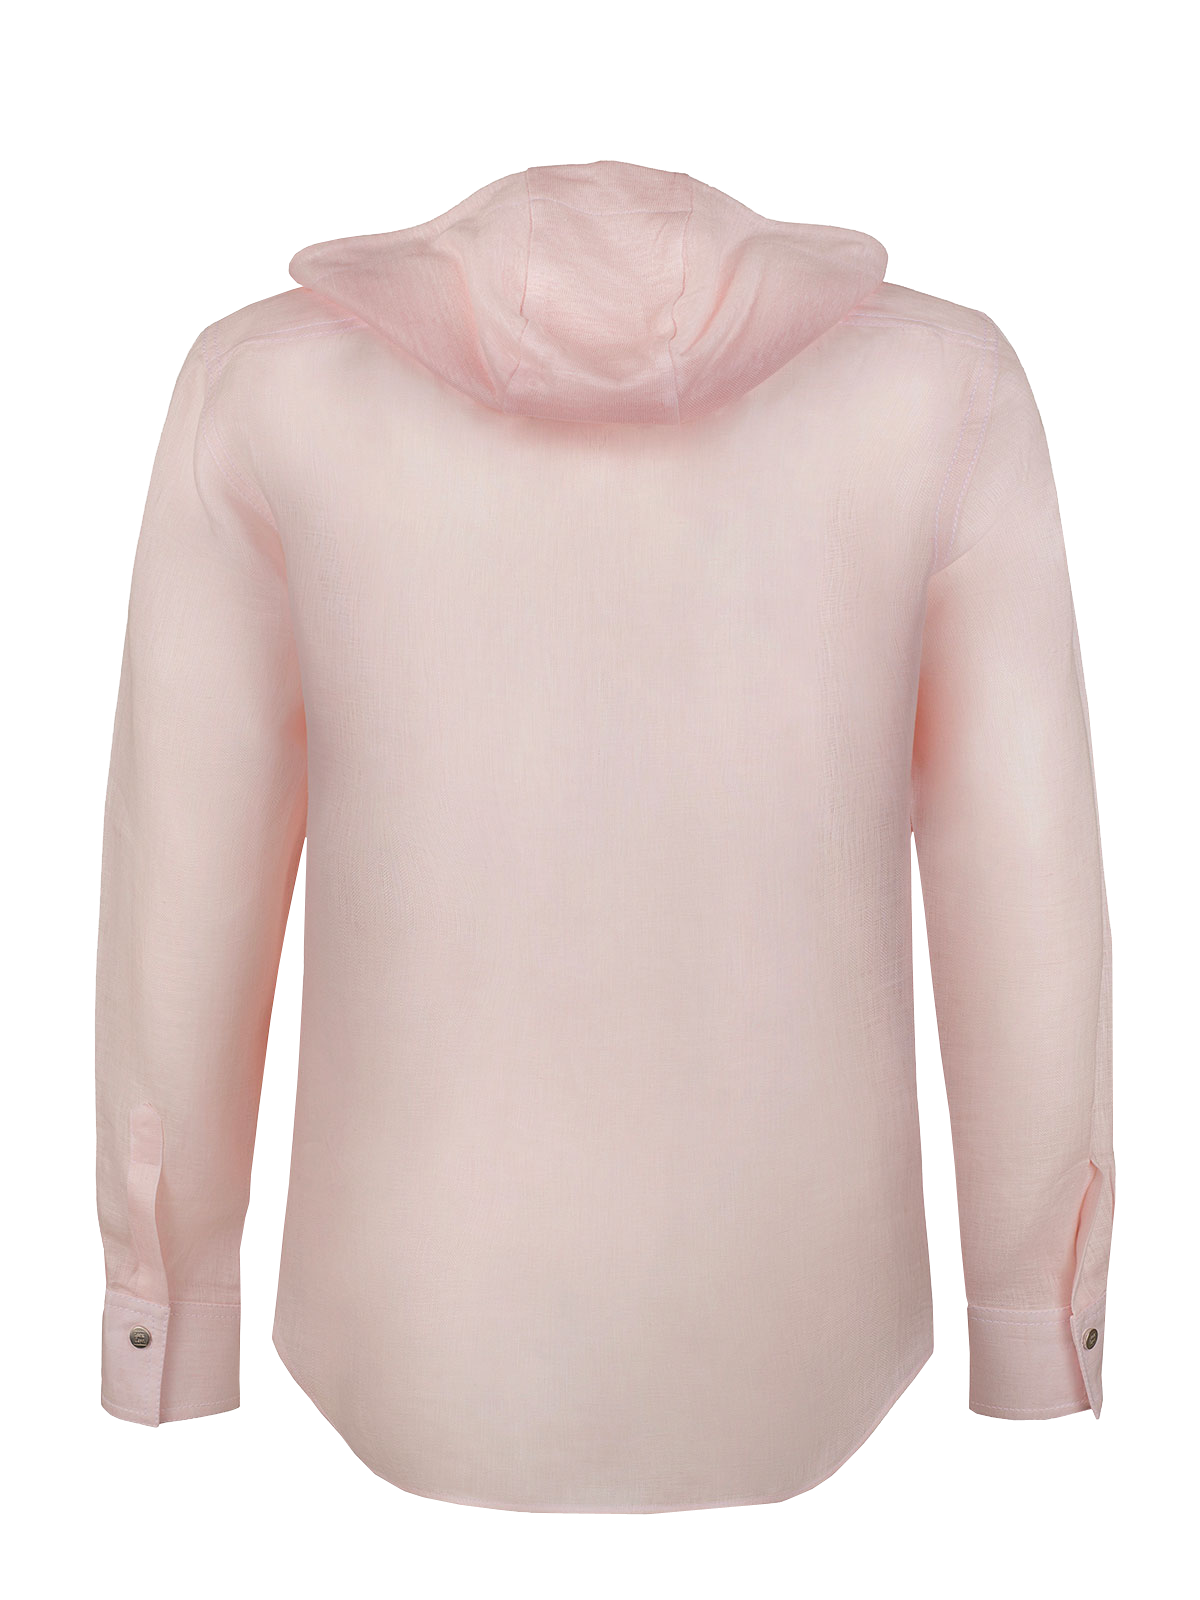 Camicia Cappuccio 100% Capri pink linen t-shirt back